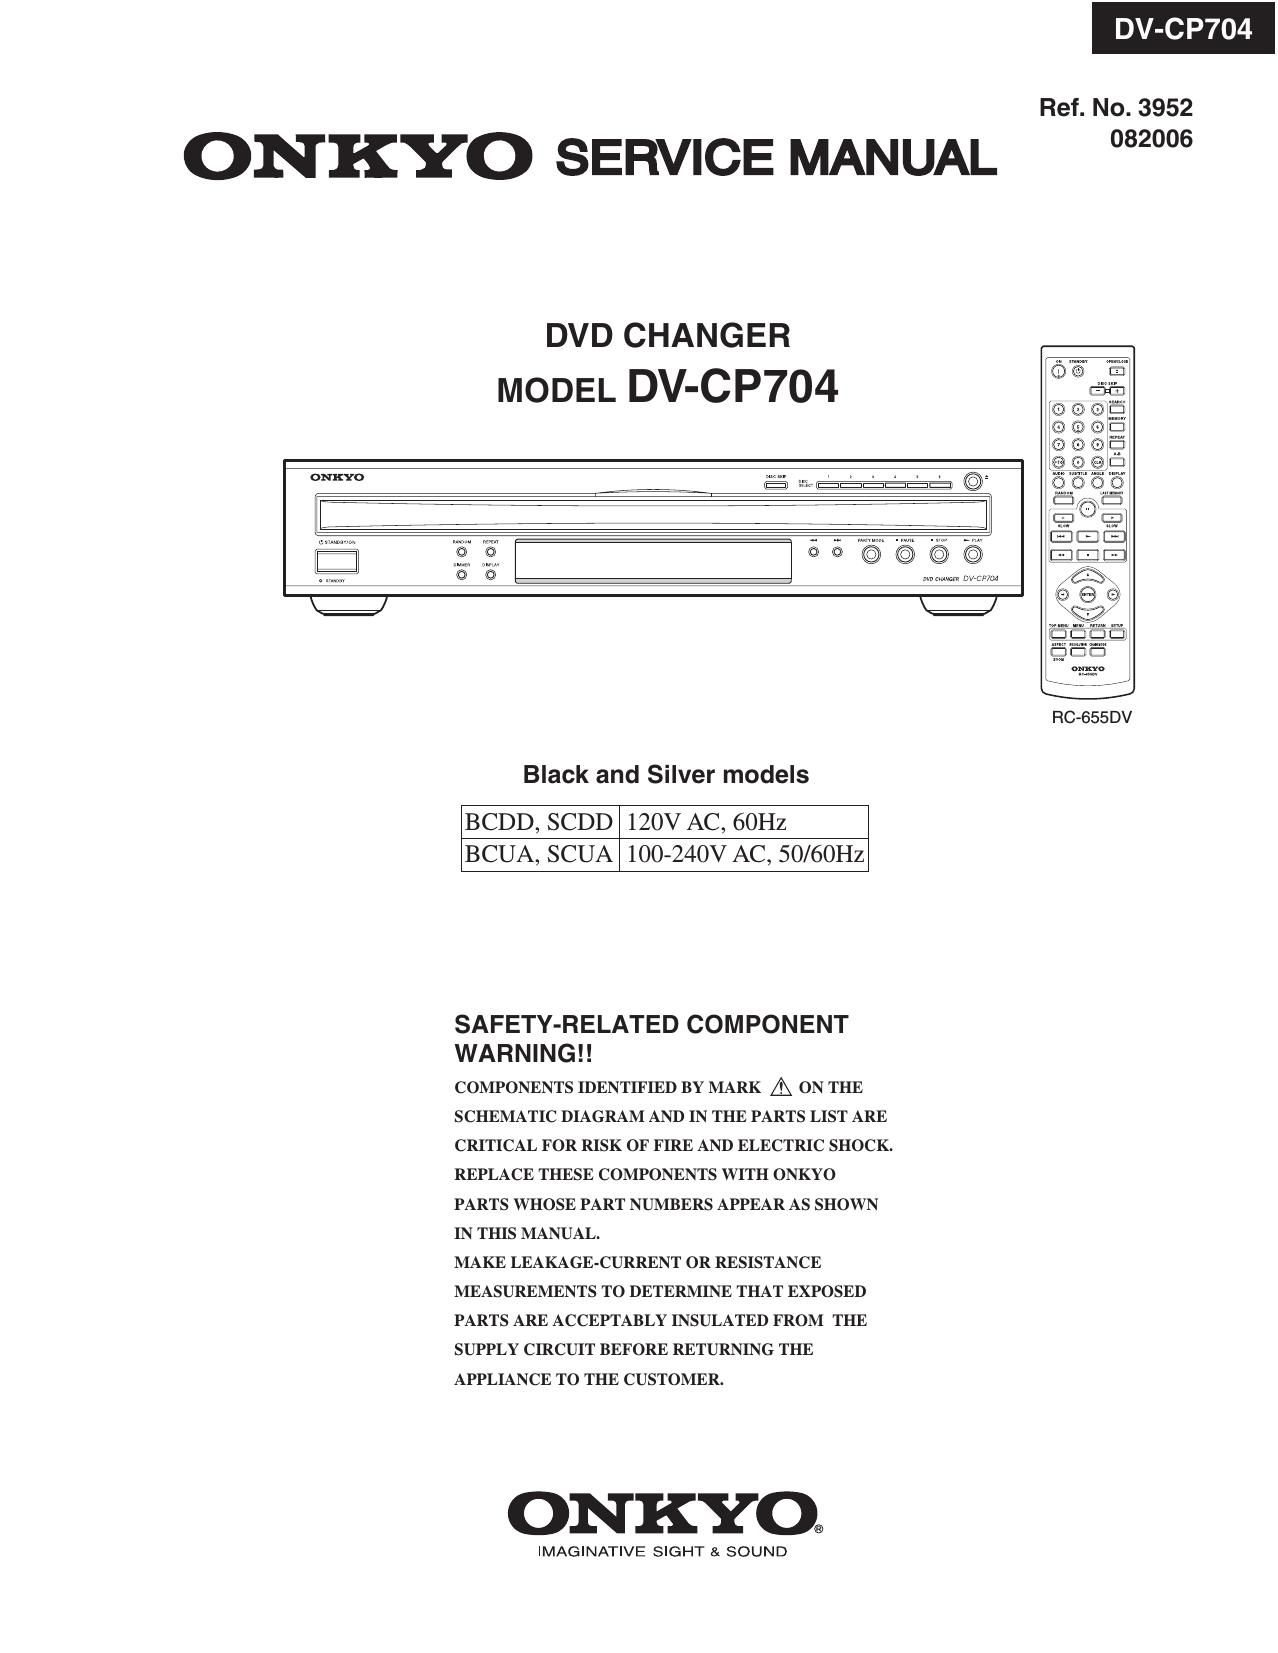 Onkyo DVCP 704 Service Manual